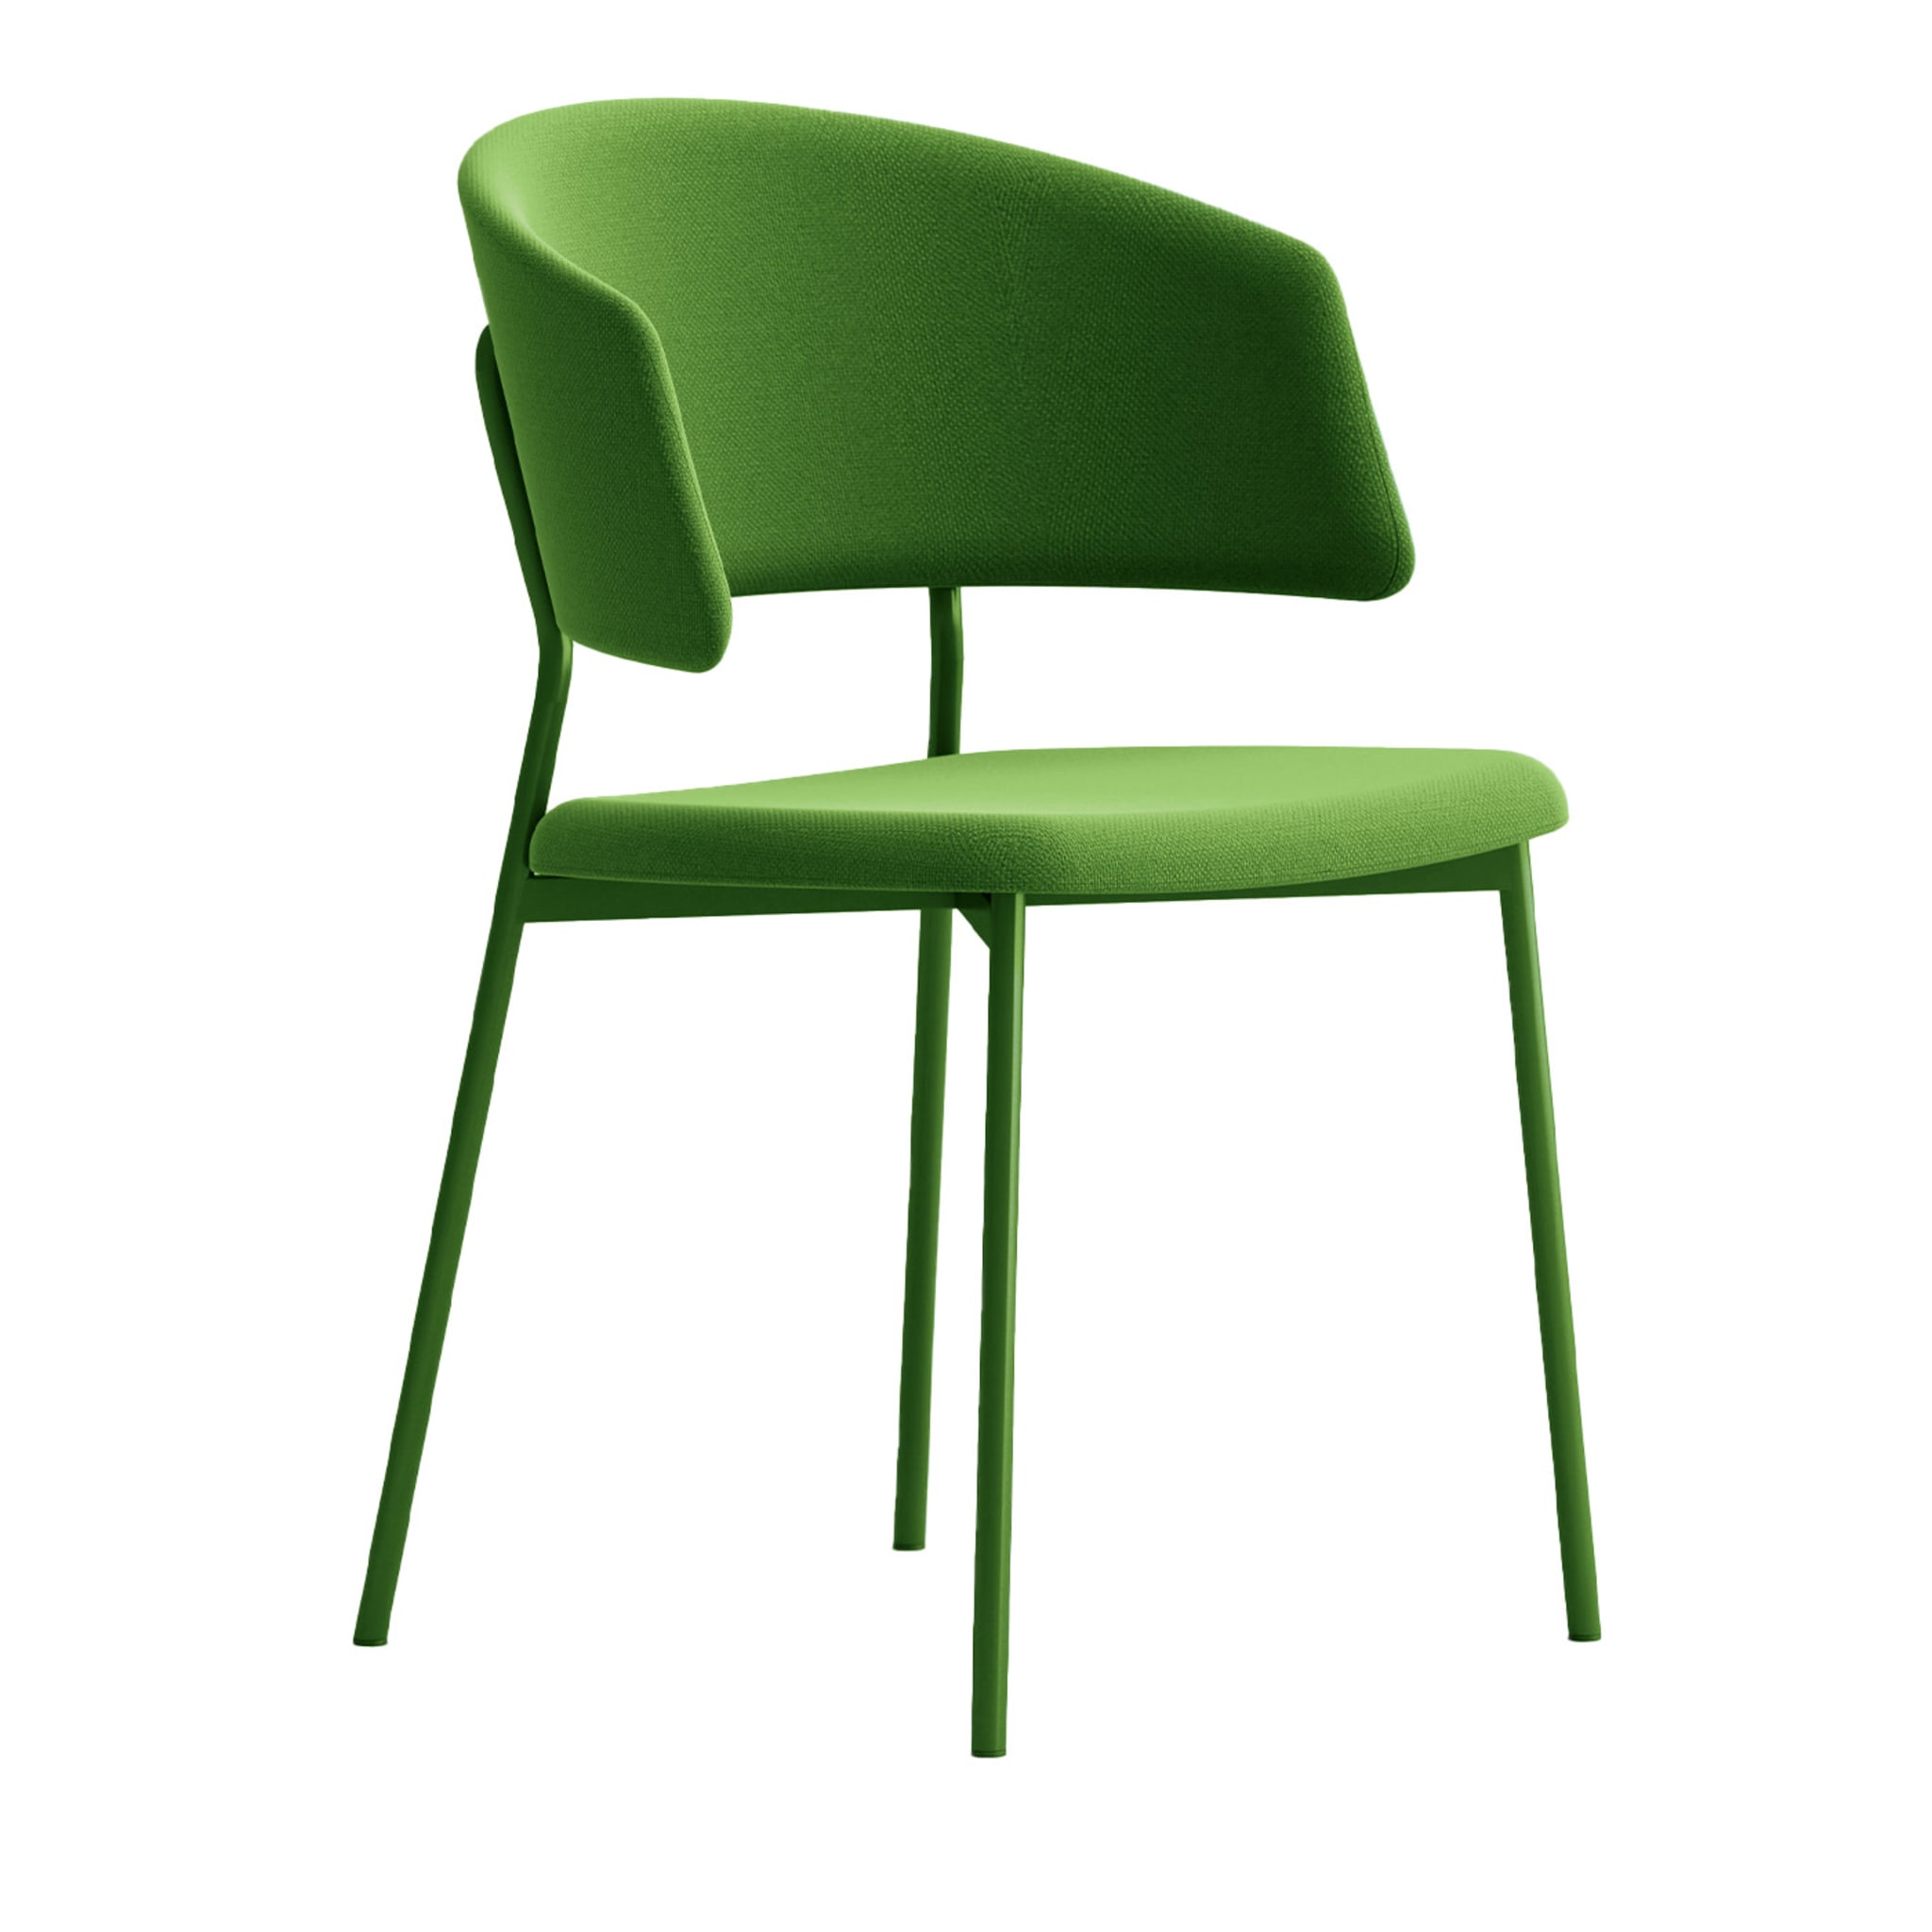 Wrap Steel Grüner Stuhl von Copiosa Lab - Hauptansicht